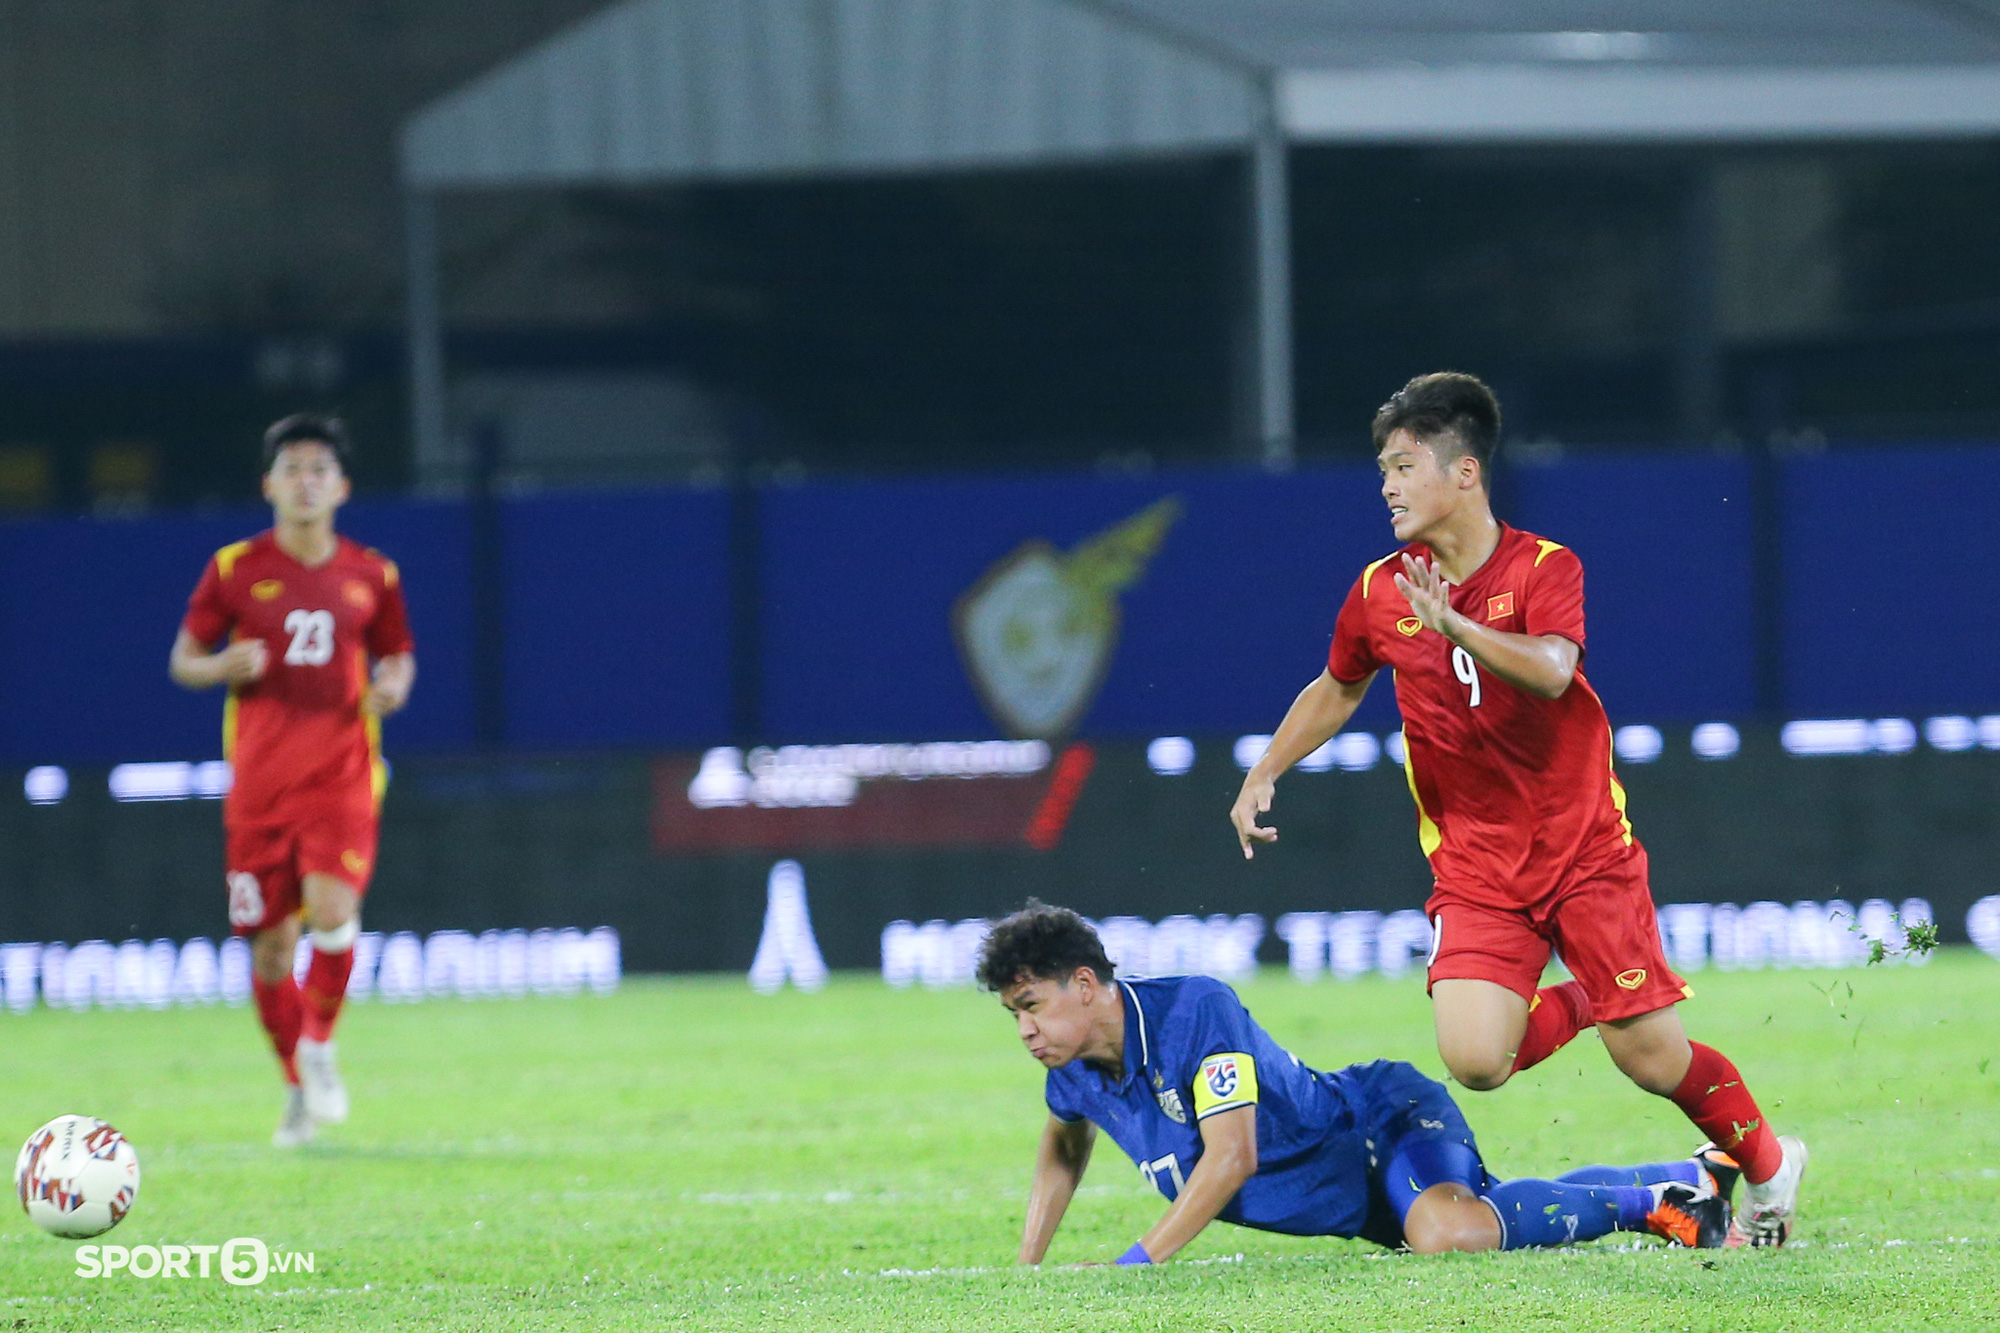 U23 Việt Nam chỉ còn 12 cầu thủ và nguy cơ bỏ giải U23 Đông Nam Á - Ảnh 1.